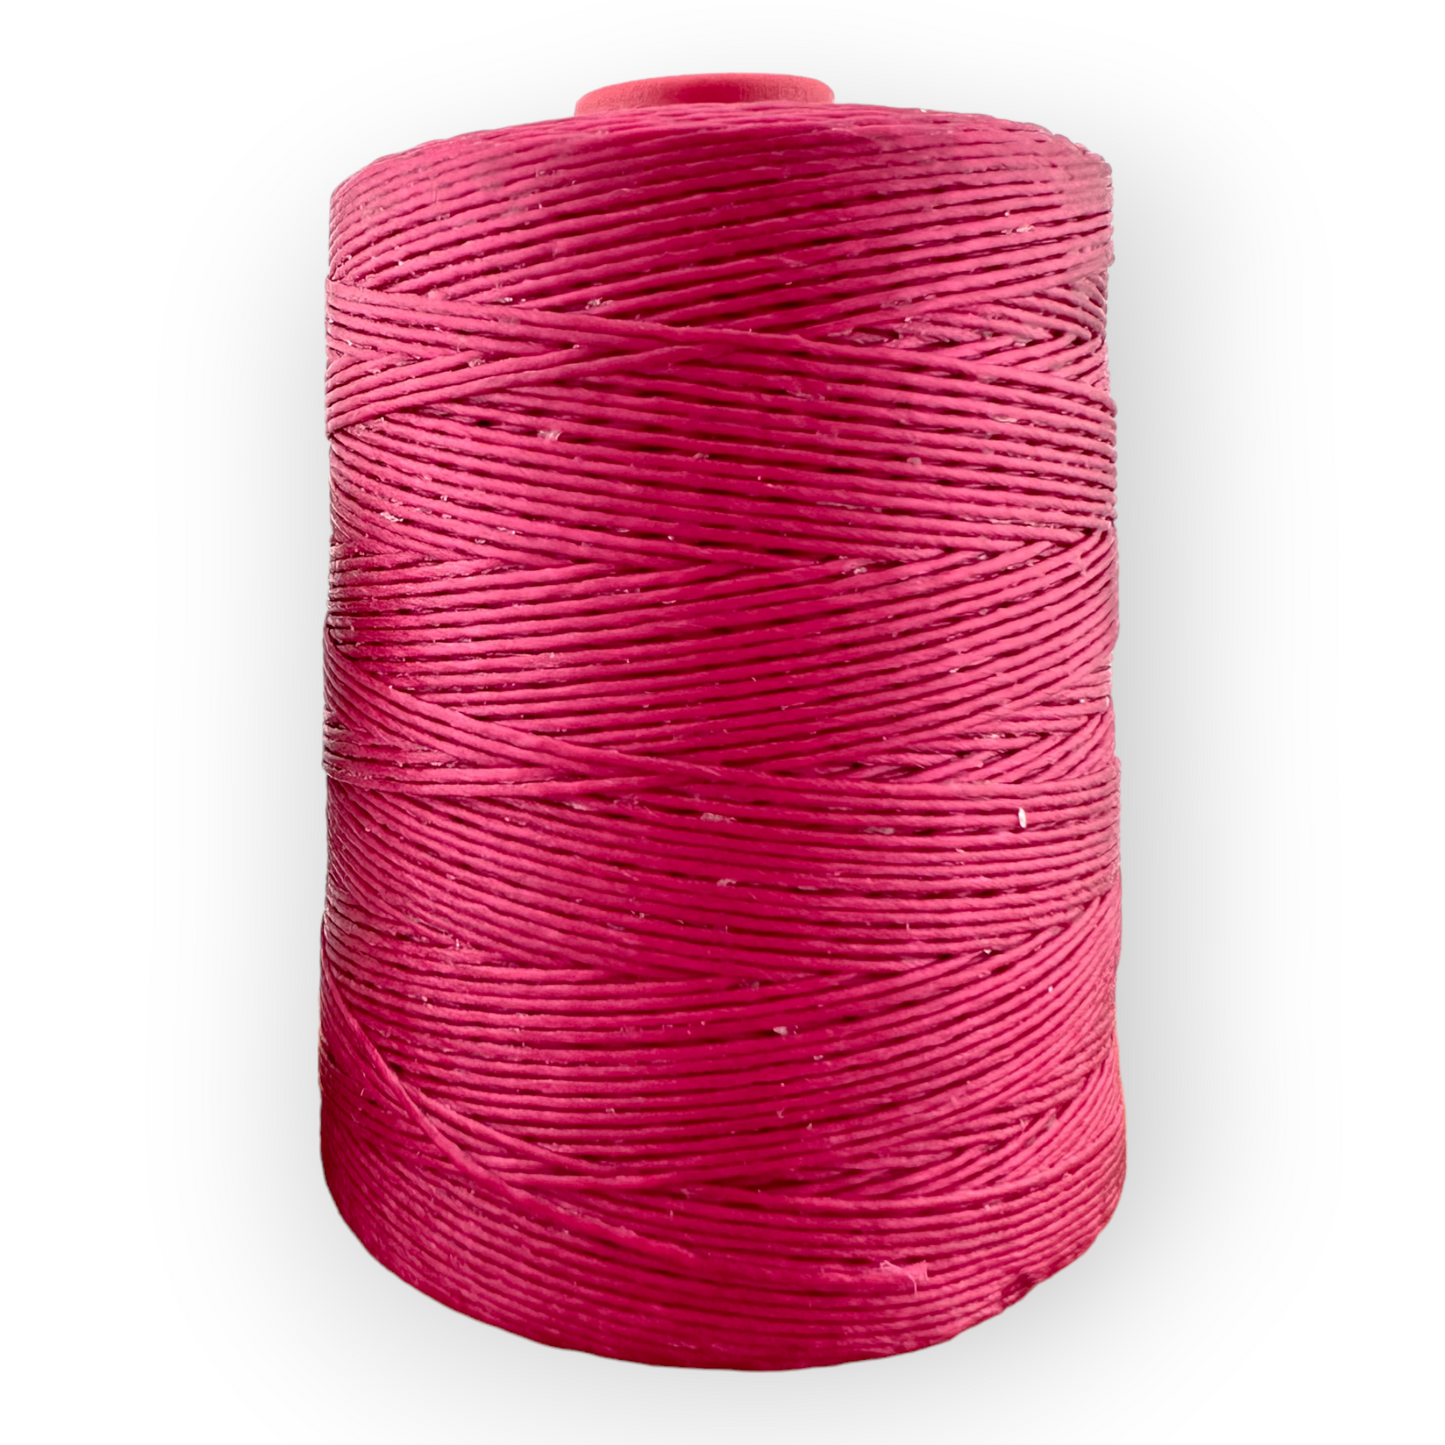 600 Meter Macrame Cord Spool - Gypsy Pink